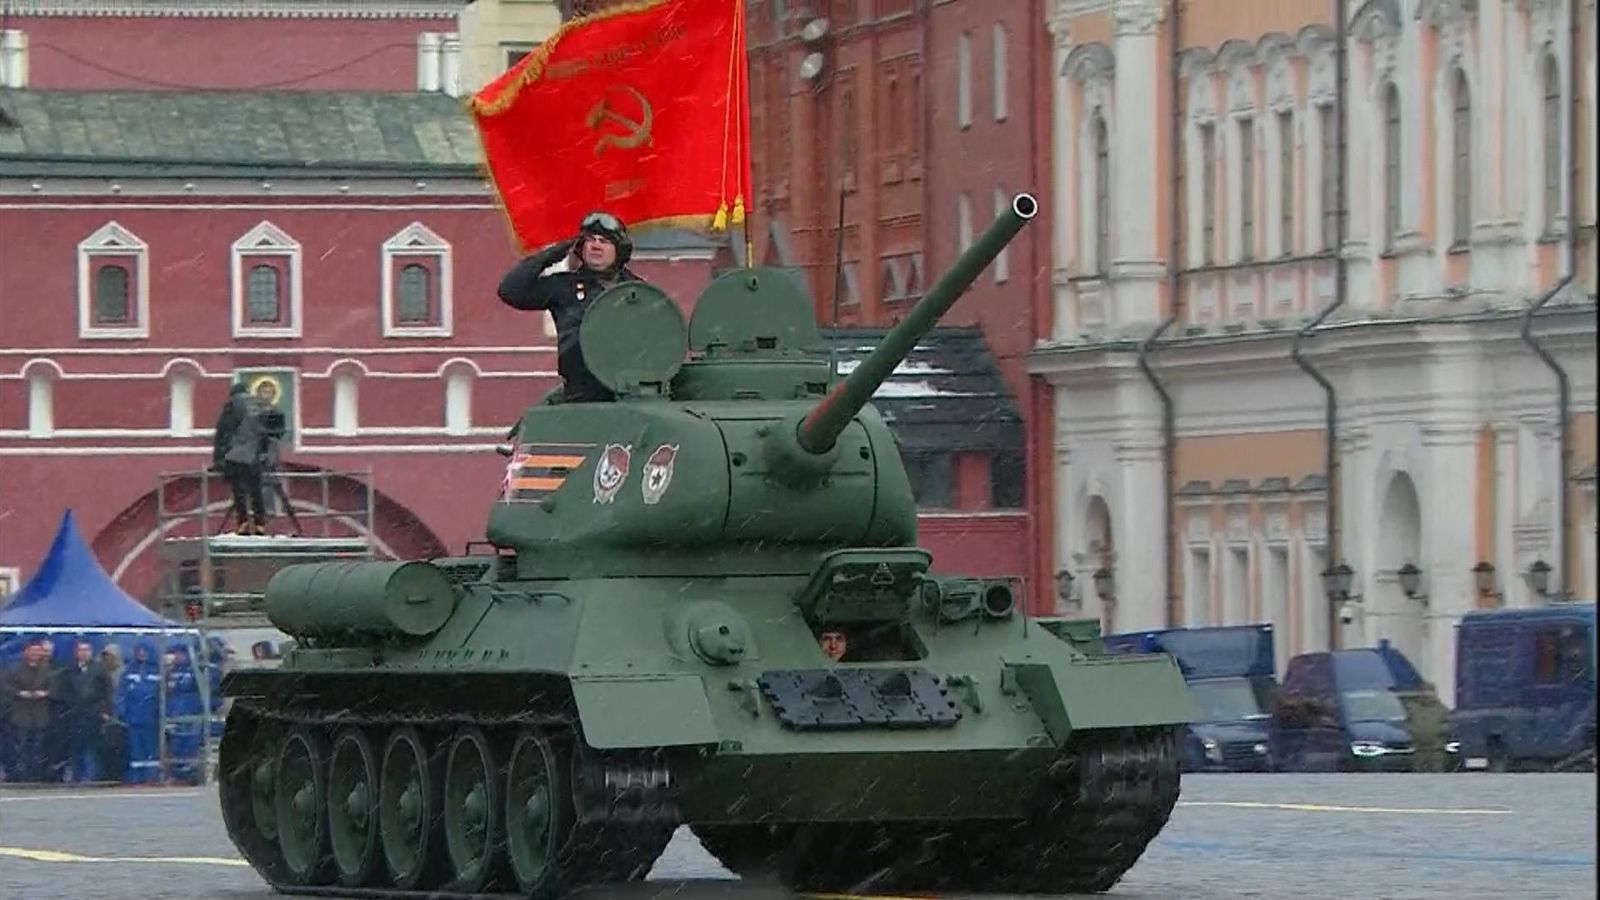 Défilé du Jour de la Victoire en Russie : un seul char exposé alors que Vladimir Poutine affirme que le pays traverse une « période difficile » |  Nouvelles du monde